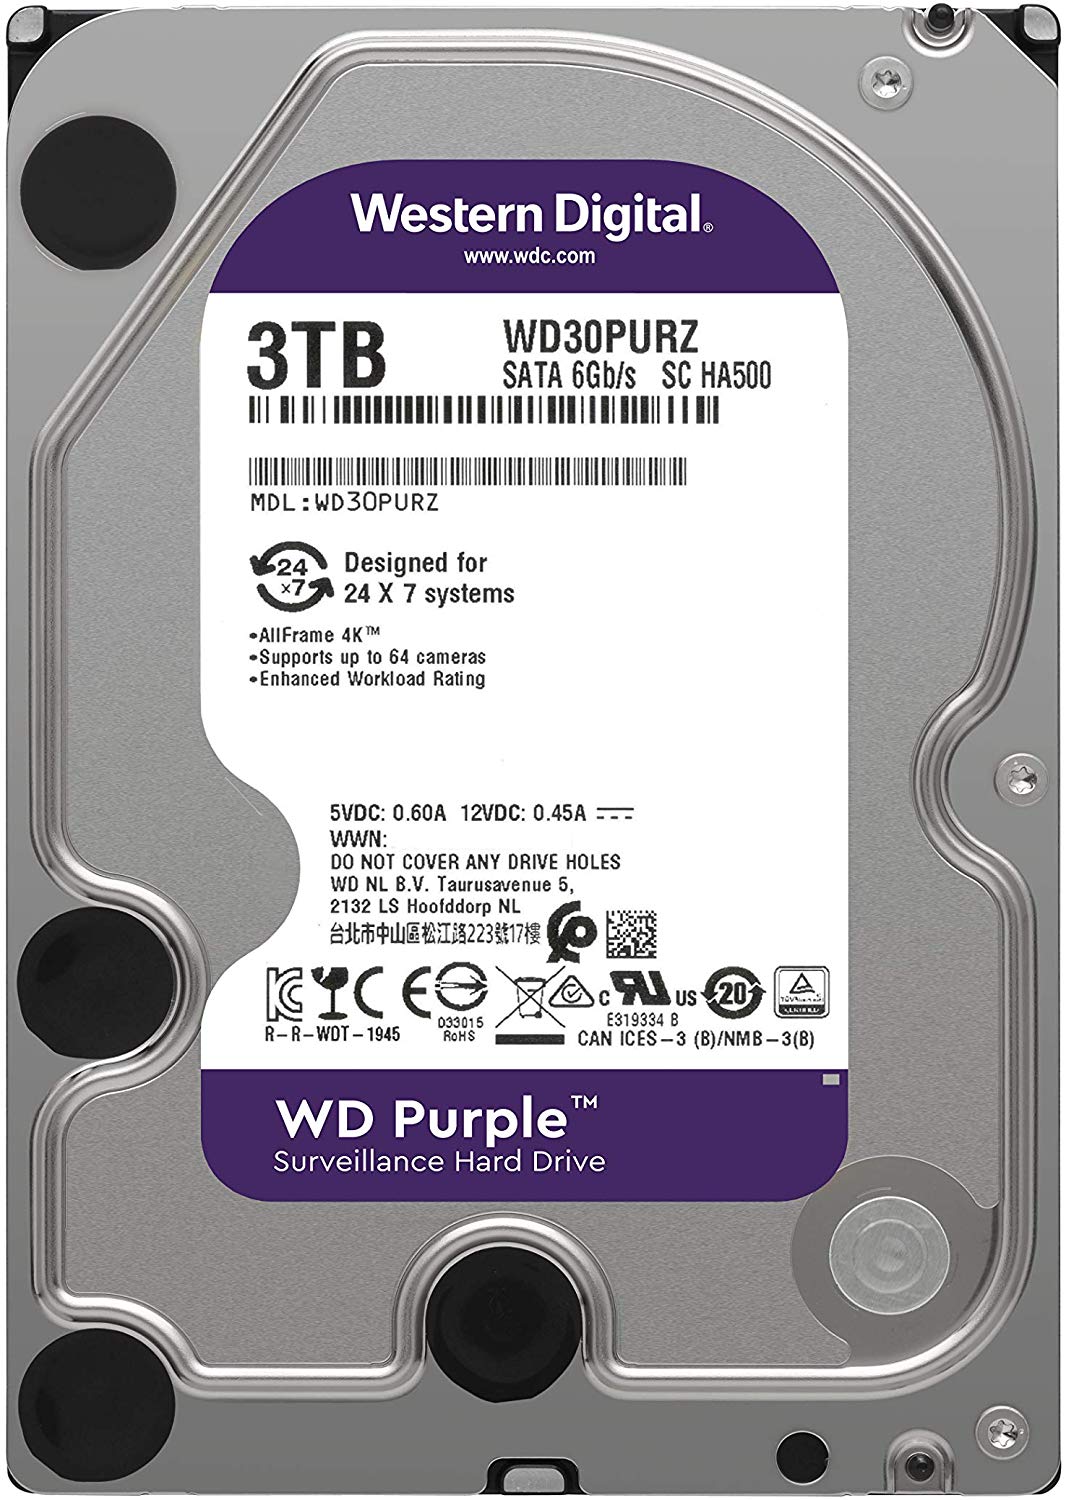 Western Digital WD Purple 3TB WD30PURZ (Surveillance) Hard Drive